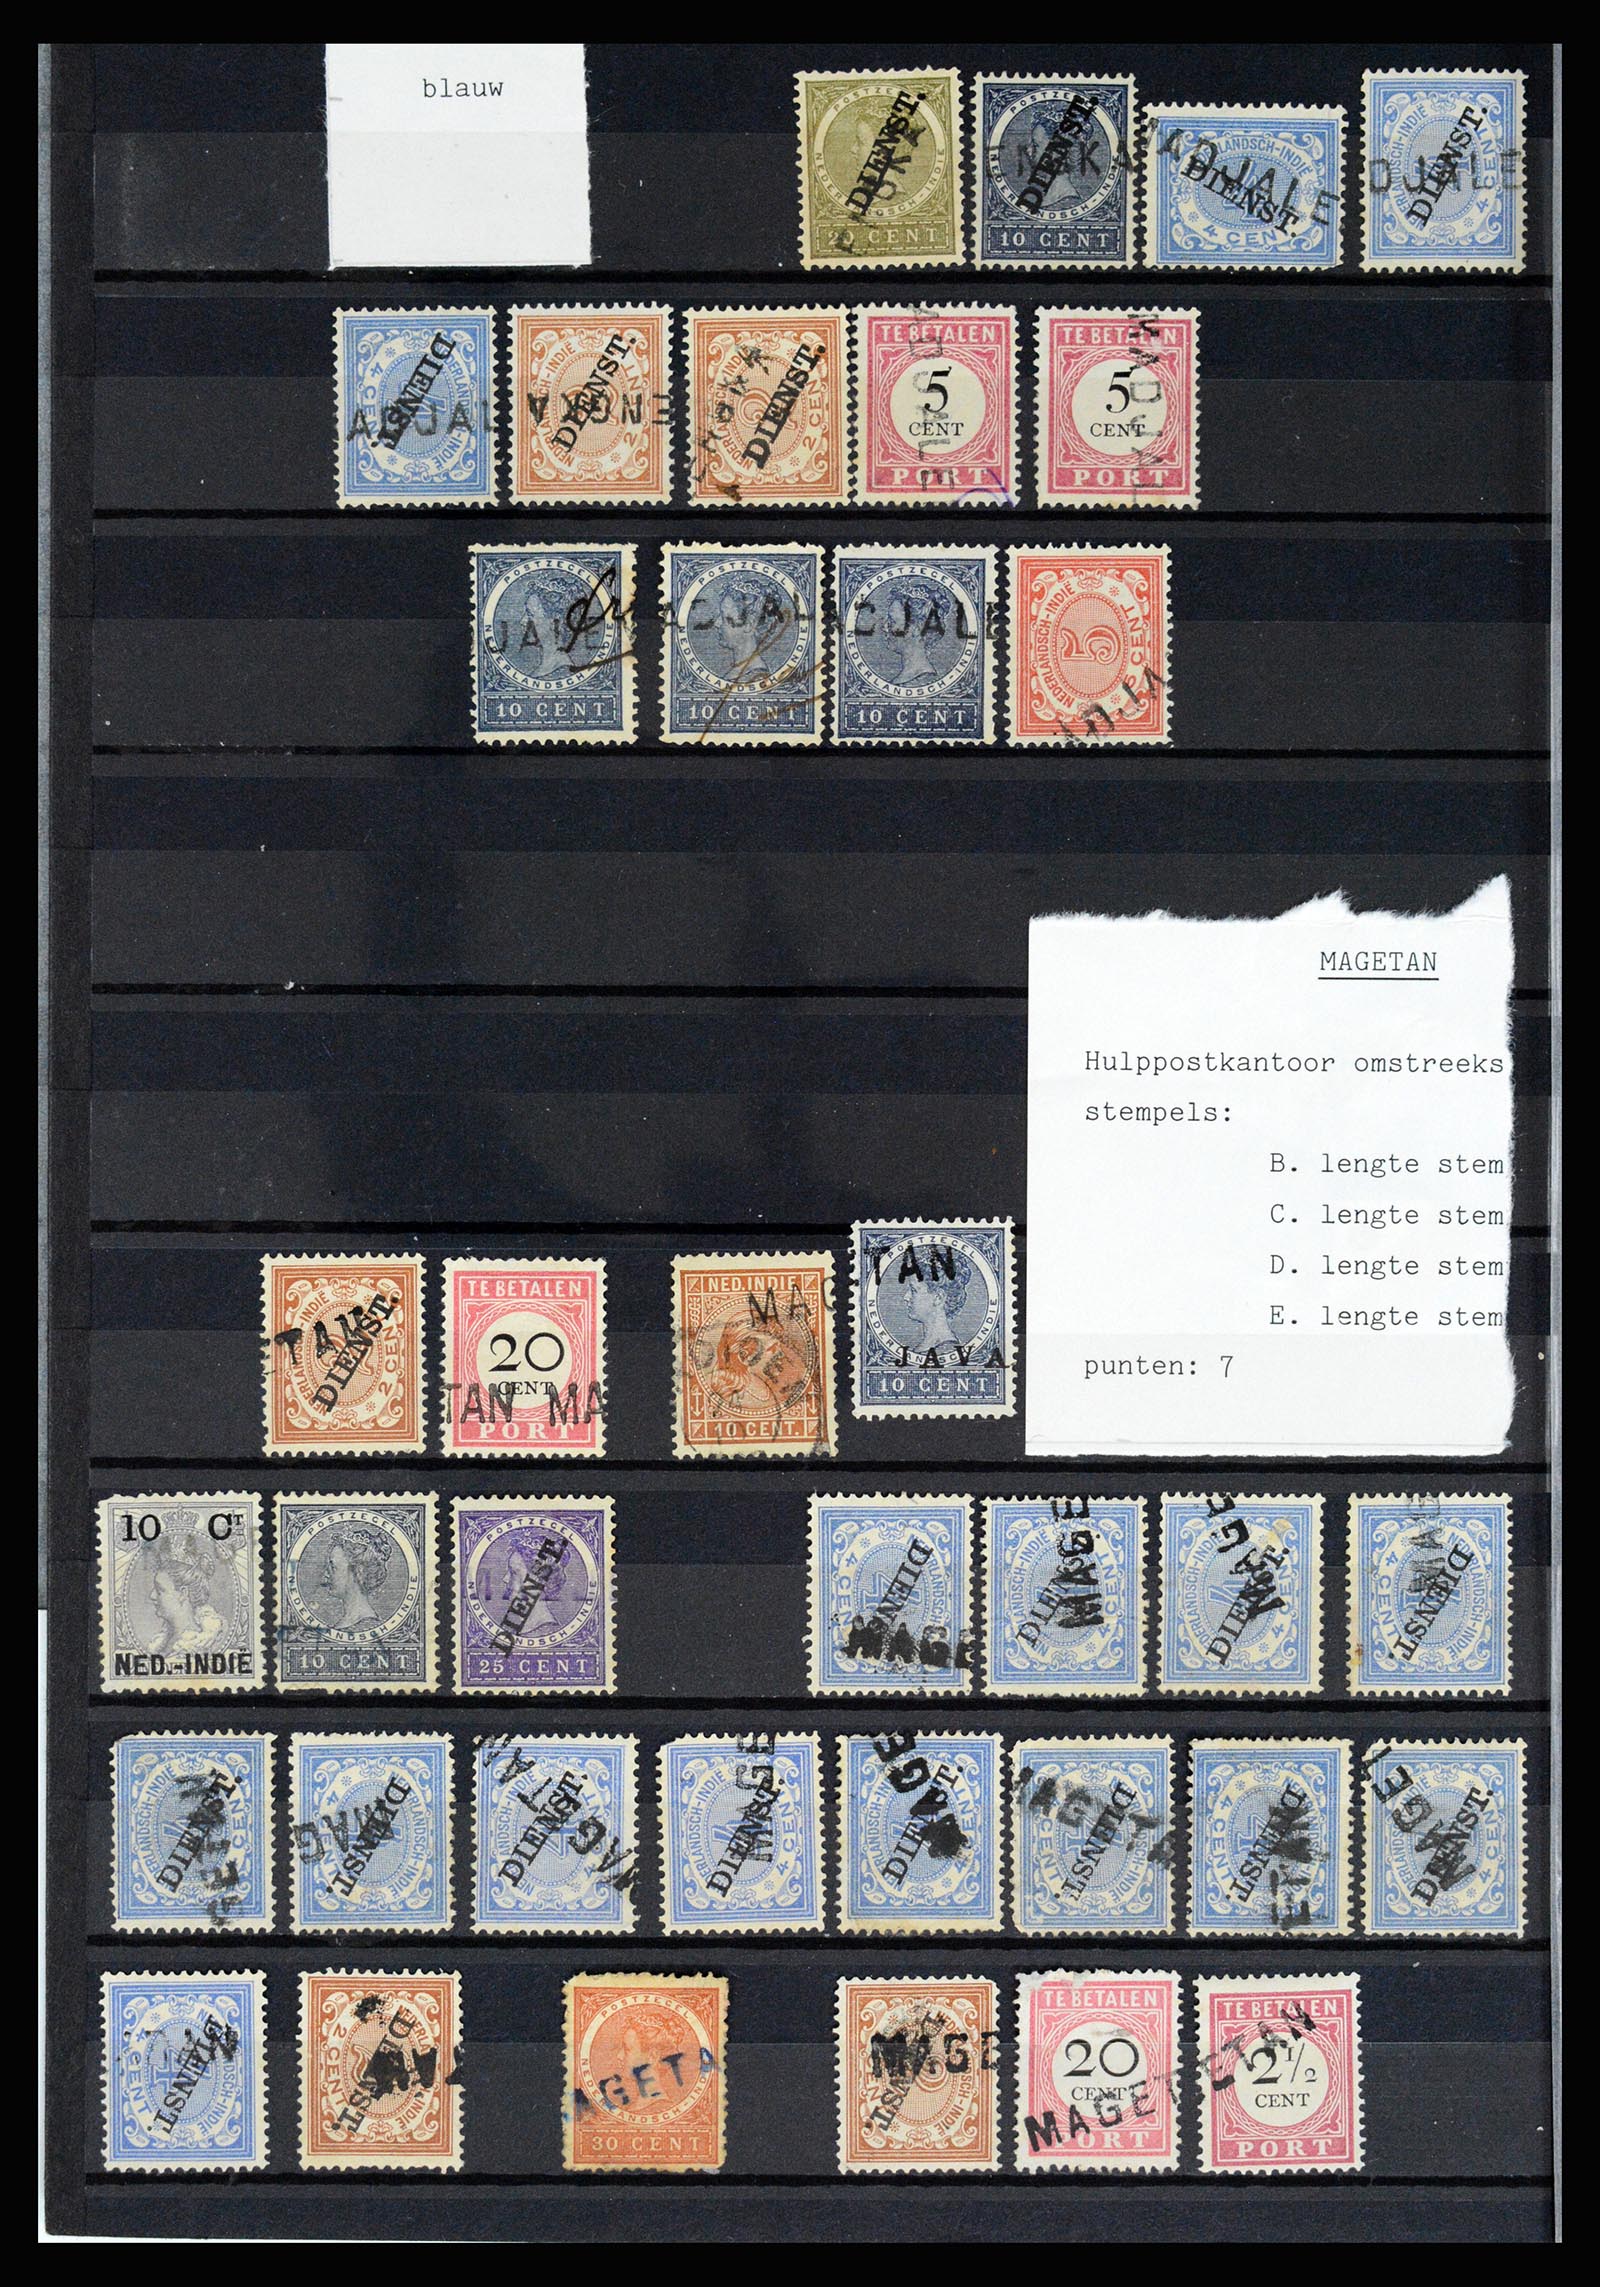 36512 042 - Stamp collection 36512 Nederlands Indië stempels 1872-1930.